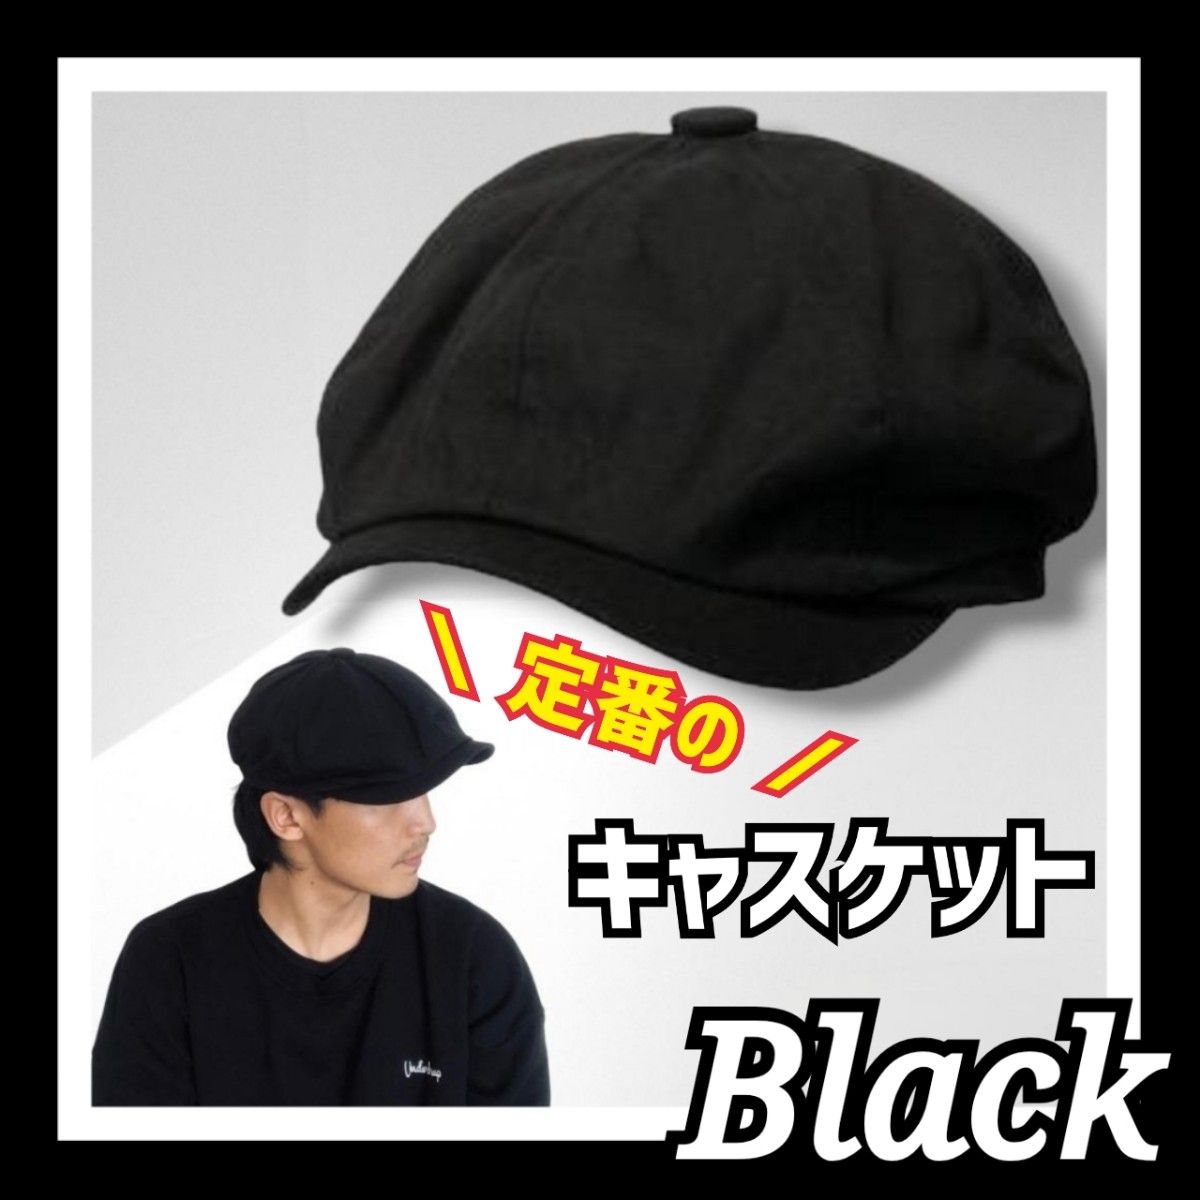 キャスケット 帽子 ブラック キャップ 黒 リンクコーデ カップル おそろい 男女兼用 ハンチング ストリート カジュアル